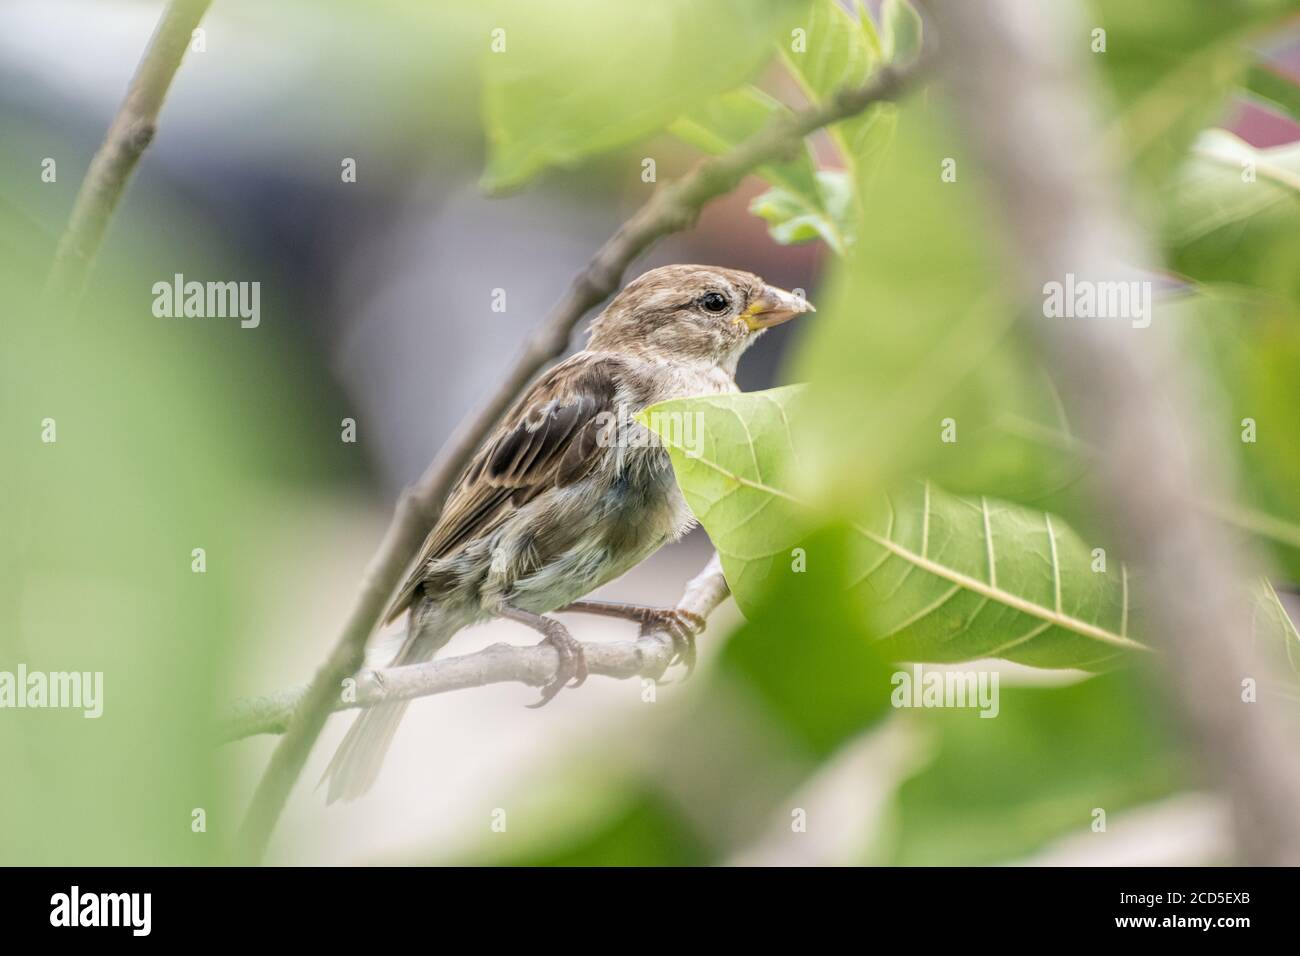 Sparrow Spied Through Tree Stock Photo